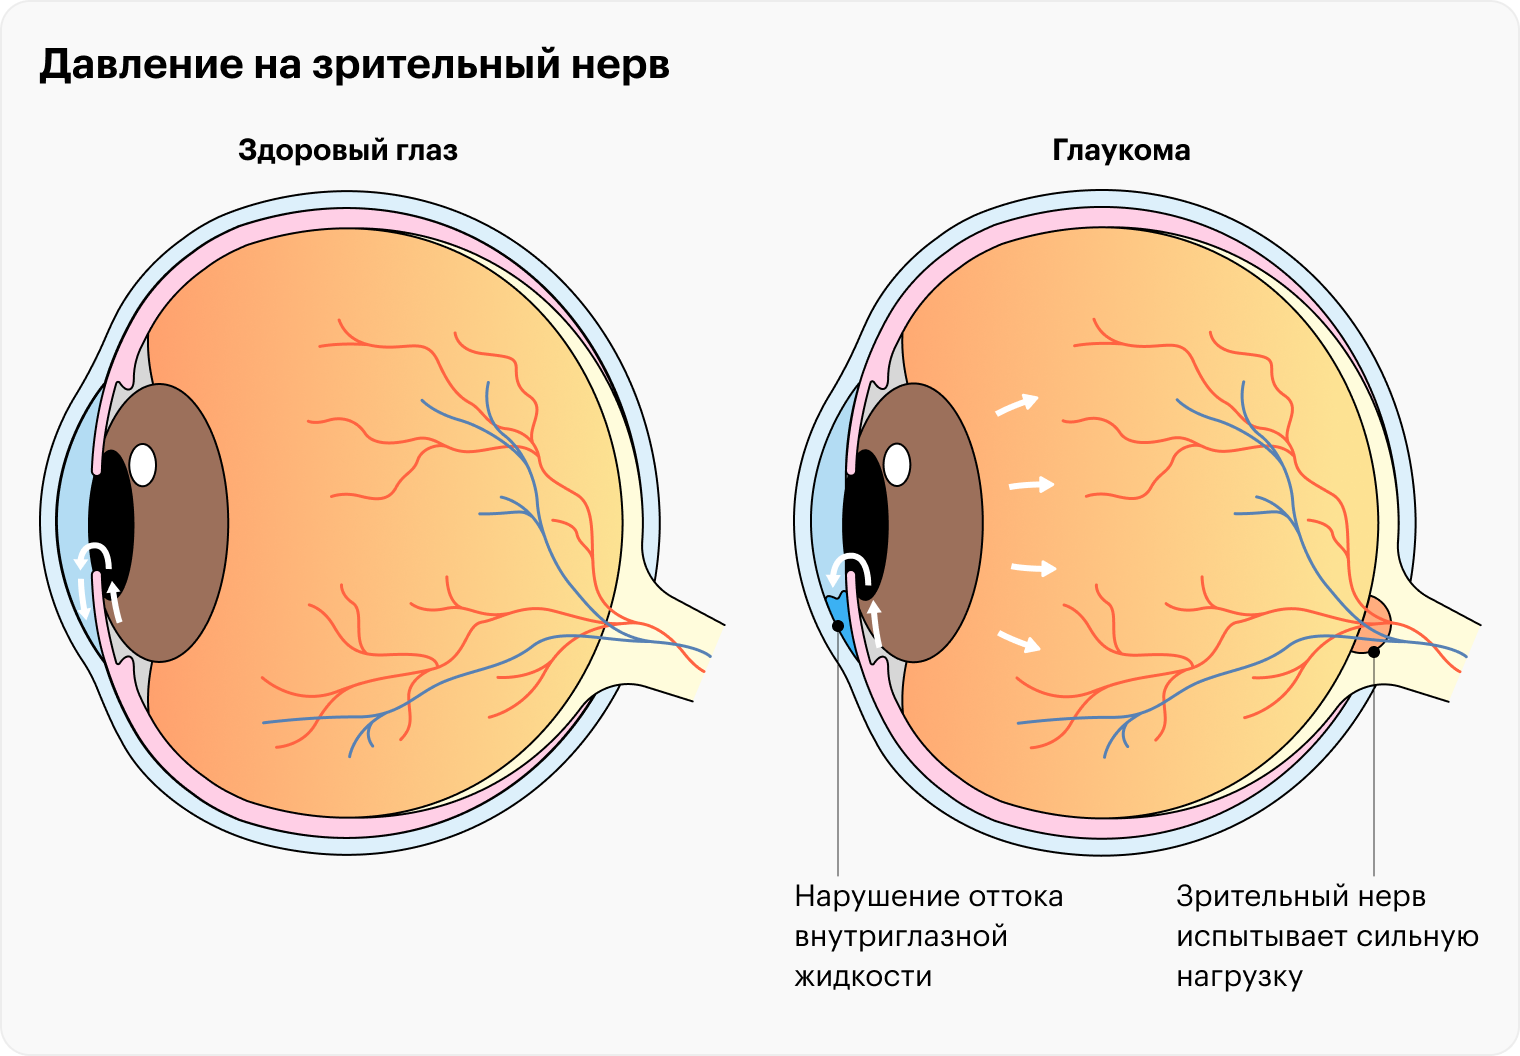 Что такое глазное давление?